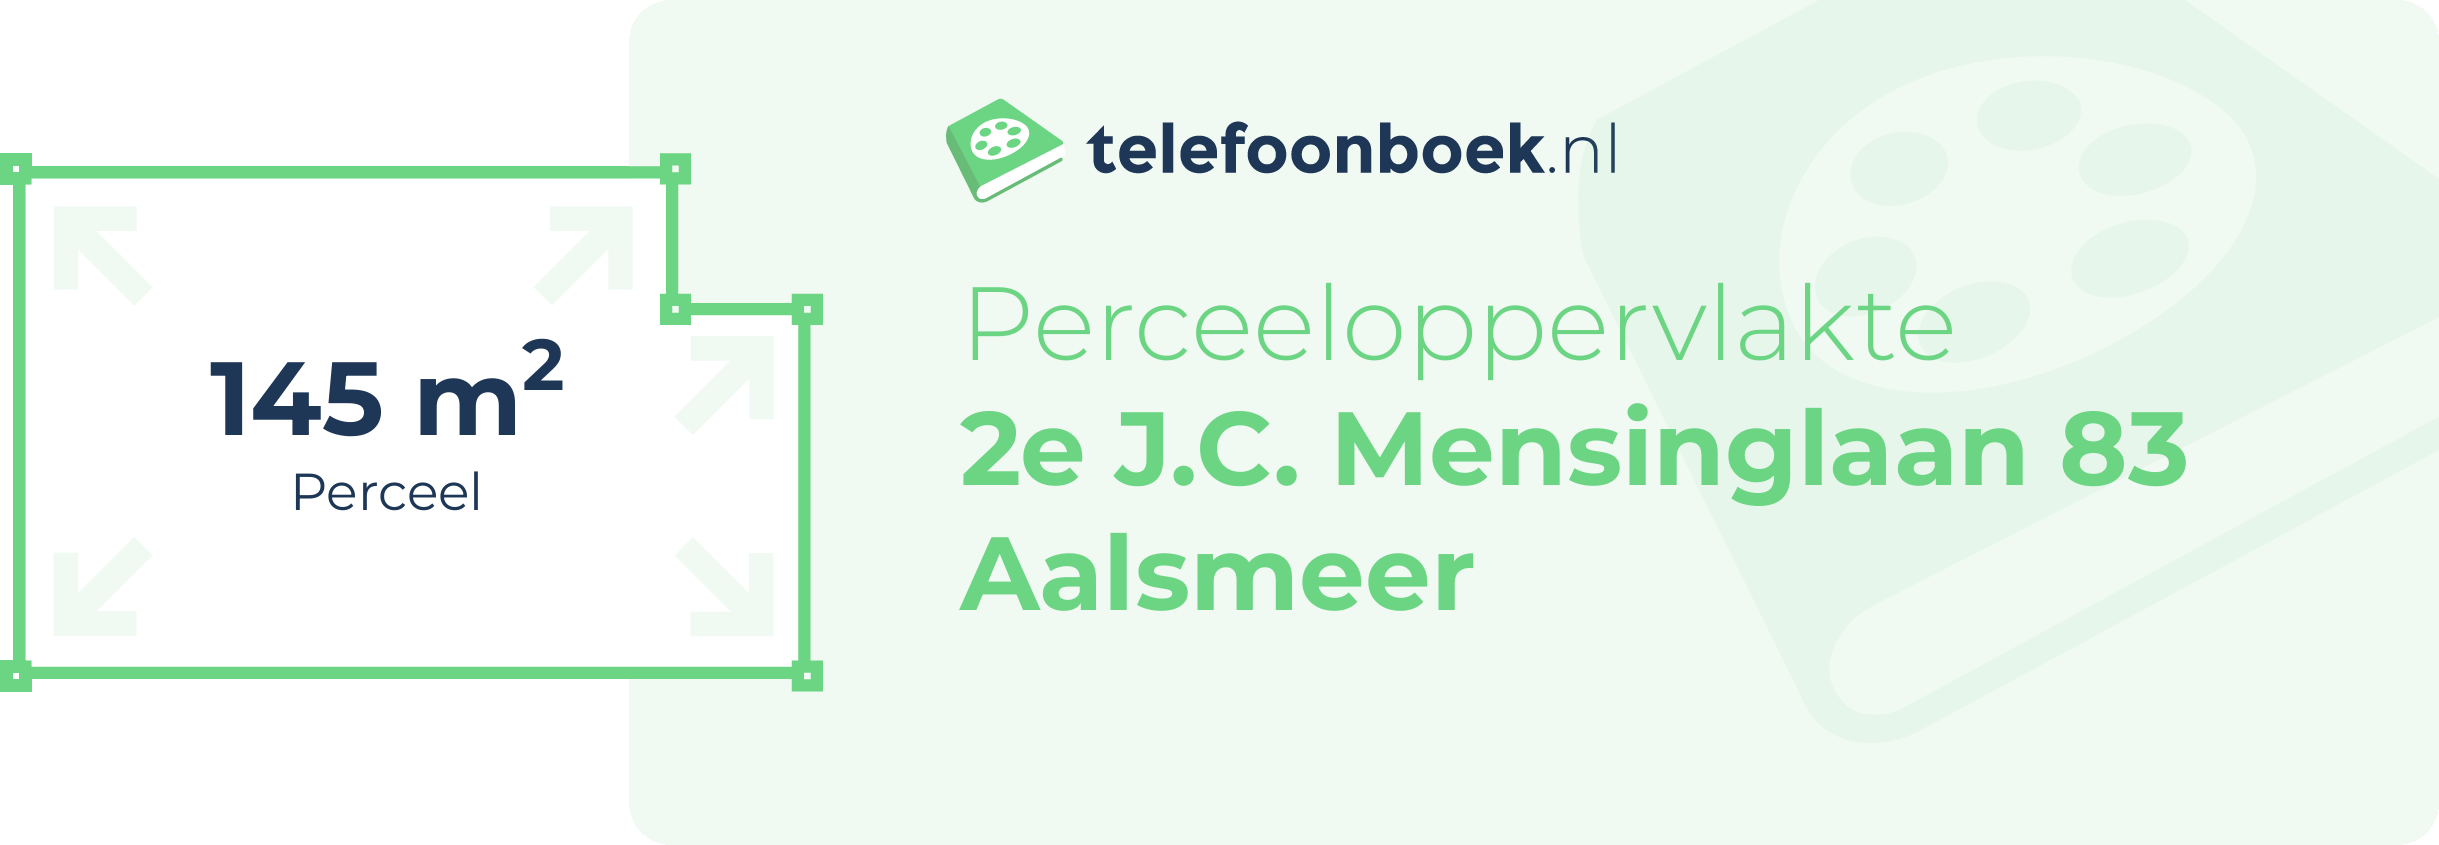 Perceeloppervlakte 2e J.C. Mensinglaan 83 Aalsmeer